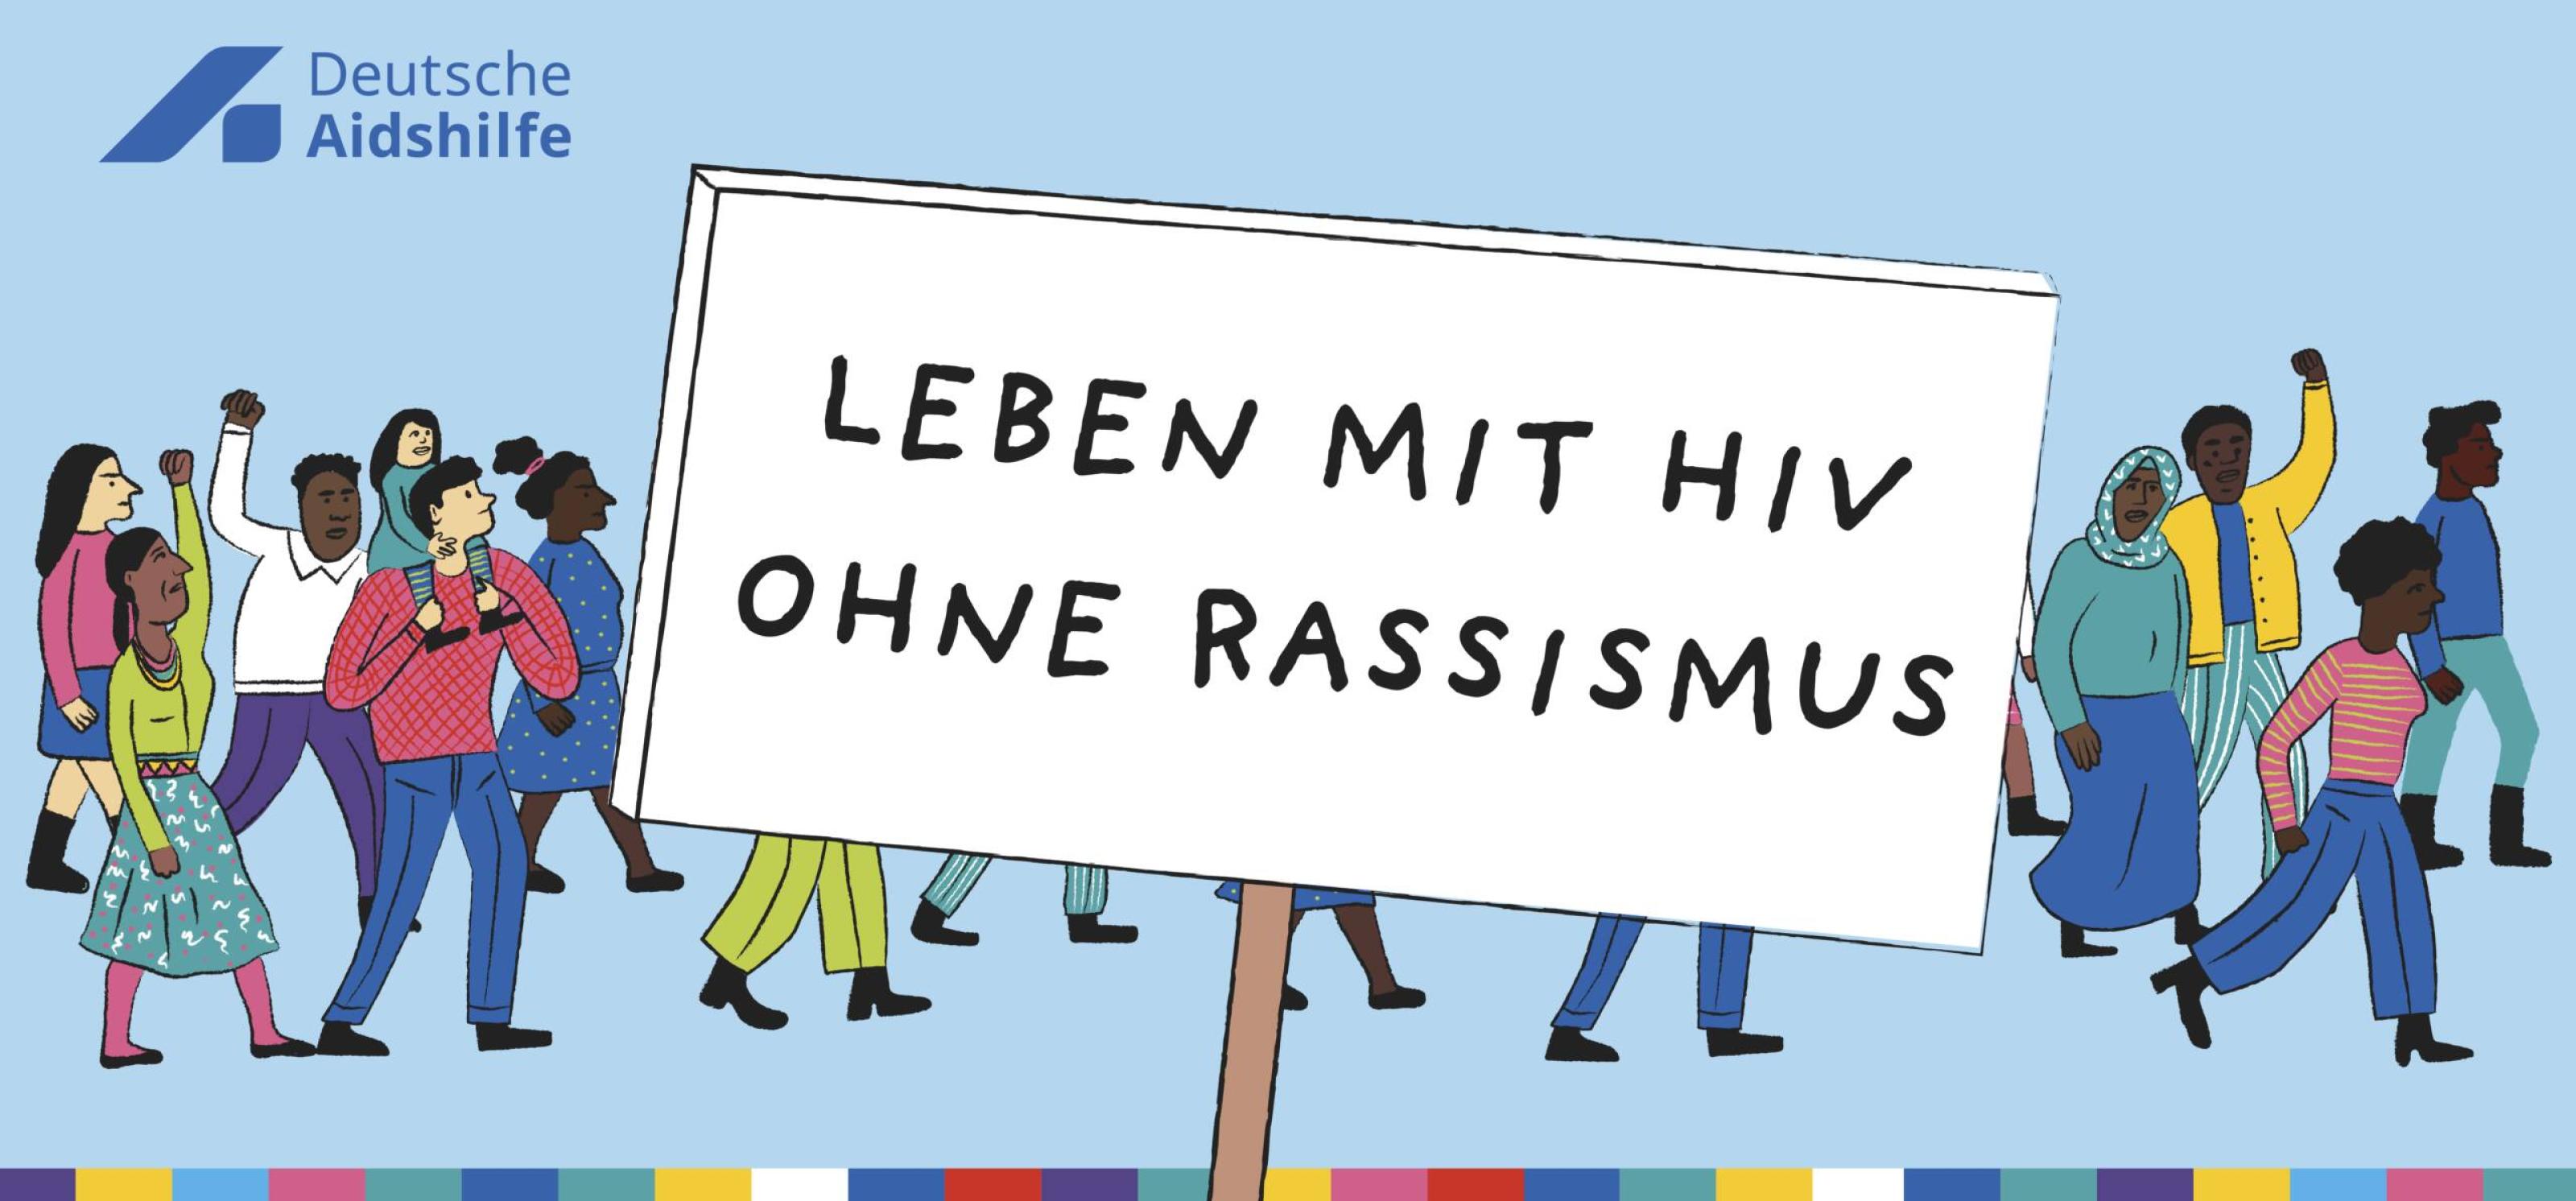 Illustration mit vielfältiger Demo: "Leben mit HIV ohne Rassismus"